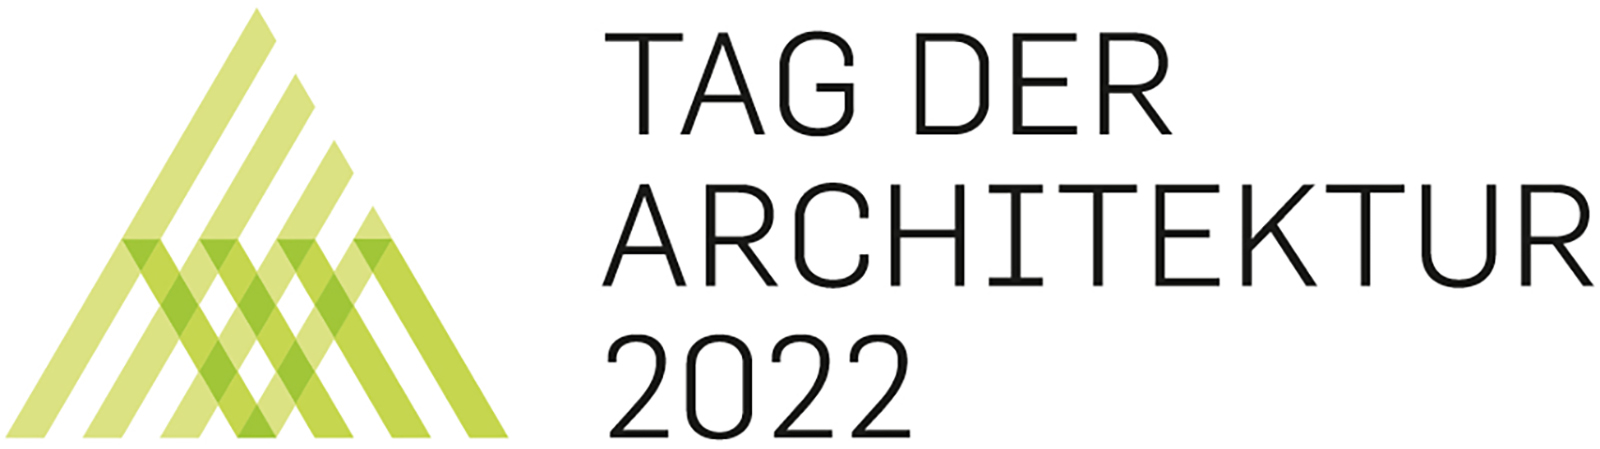 Tag der Architektur 2022 FFM-ARCHITEKTEN